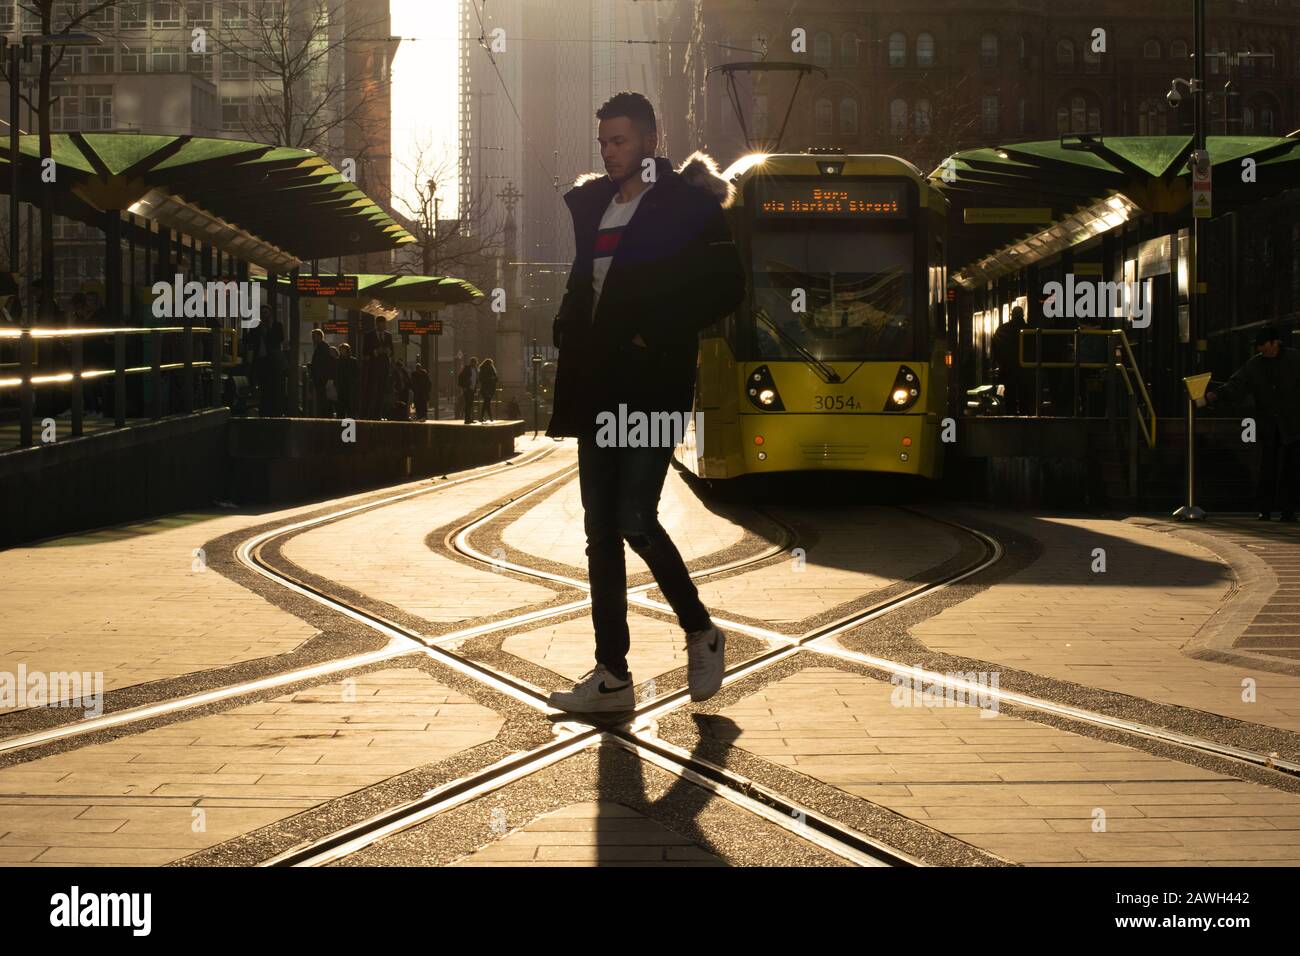 Un uomo cammina attraverso la strada alla fermata del tram Metrolink St Peter's Square Manchester con un tram giallo sullo sfondo. Foto Stock